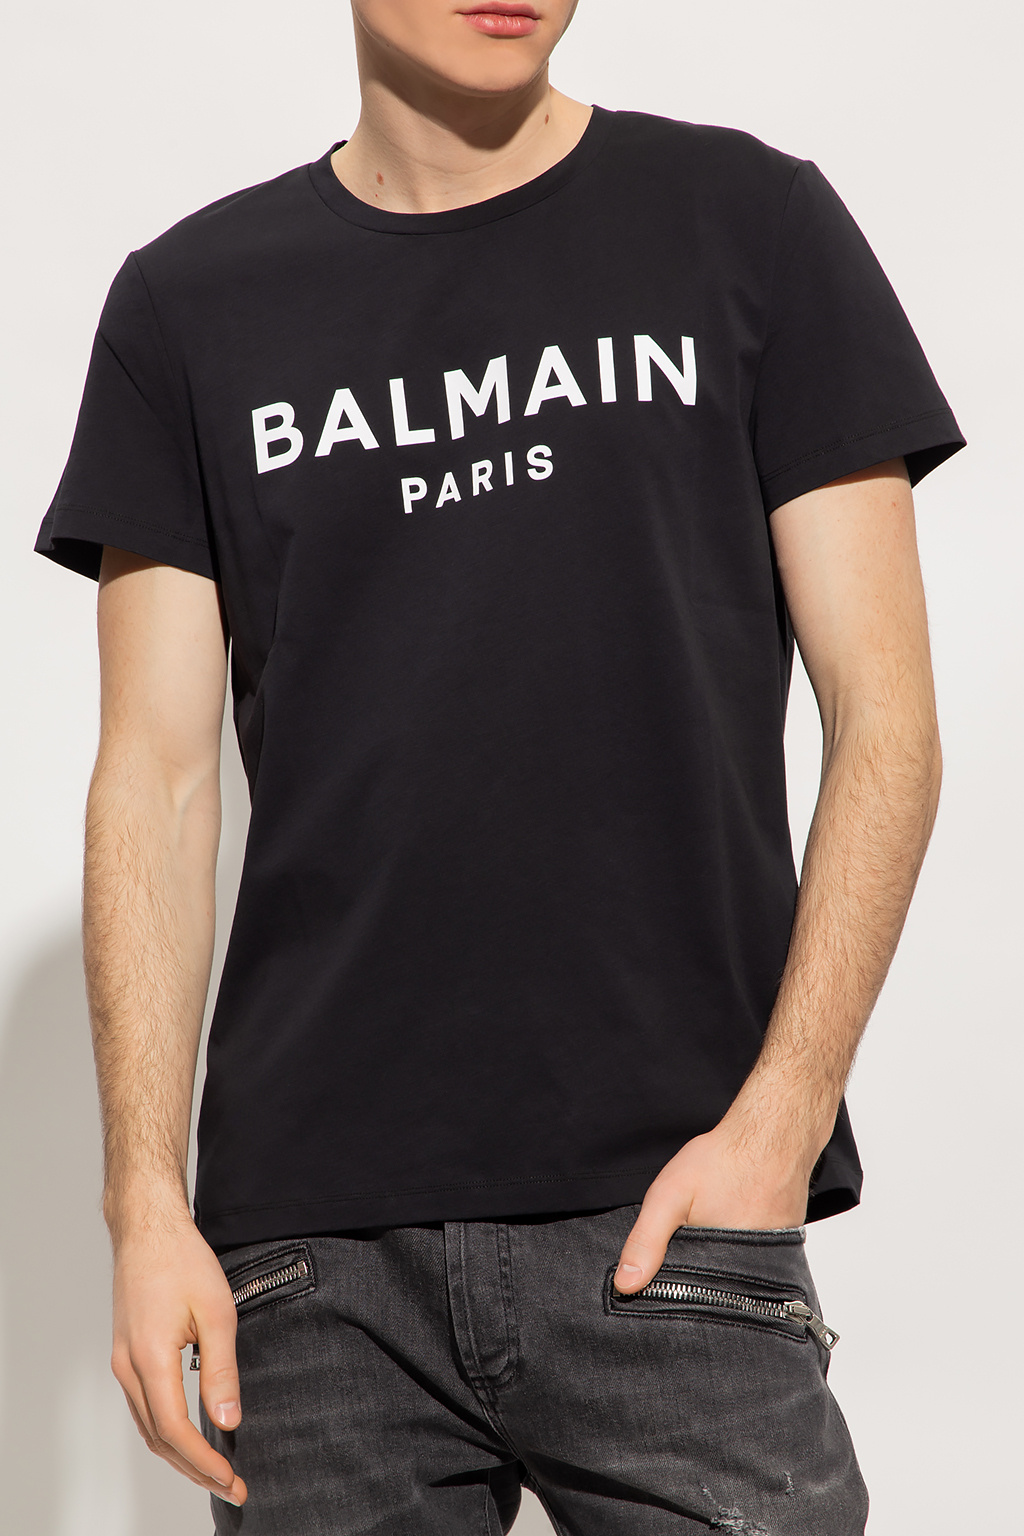 Balmain Denim Shirt with Jacquard Monogram